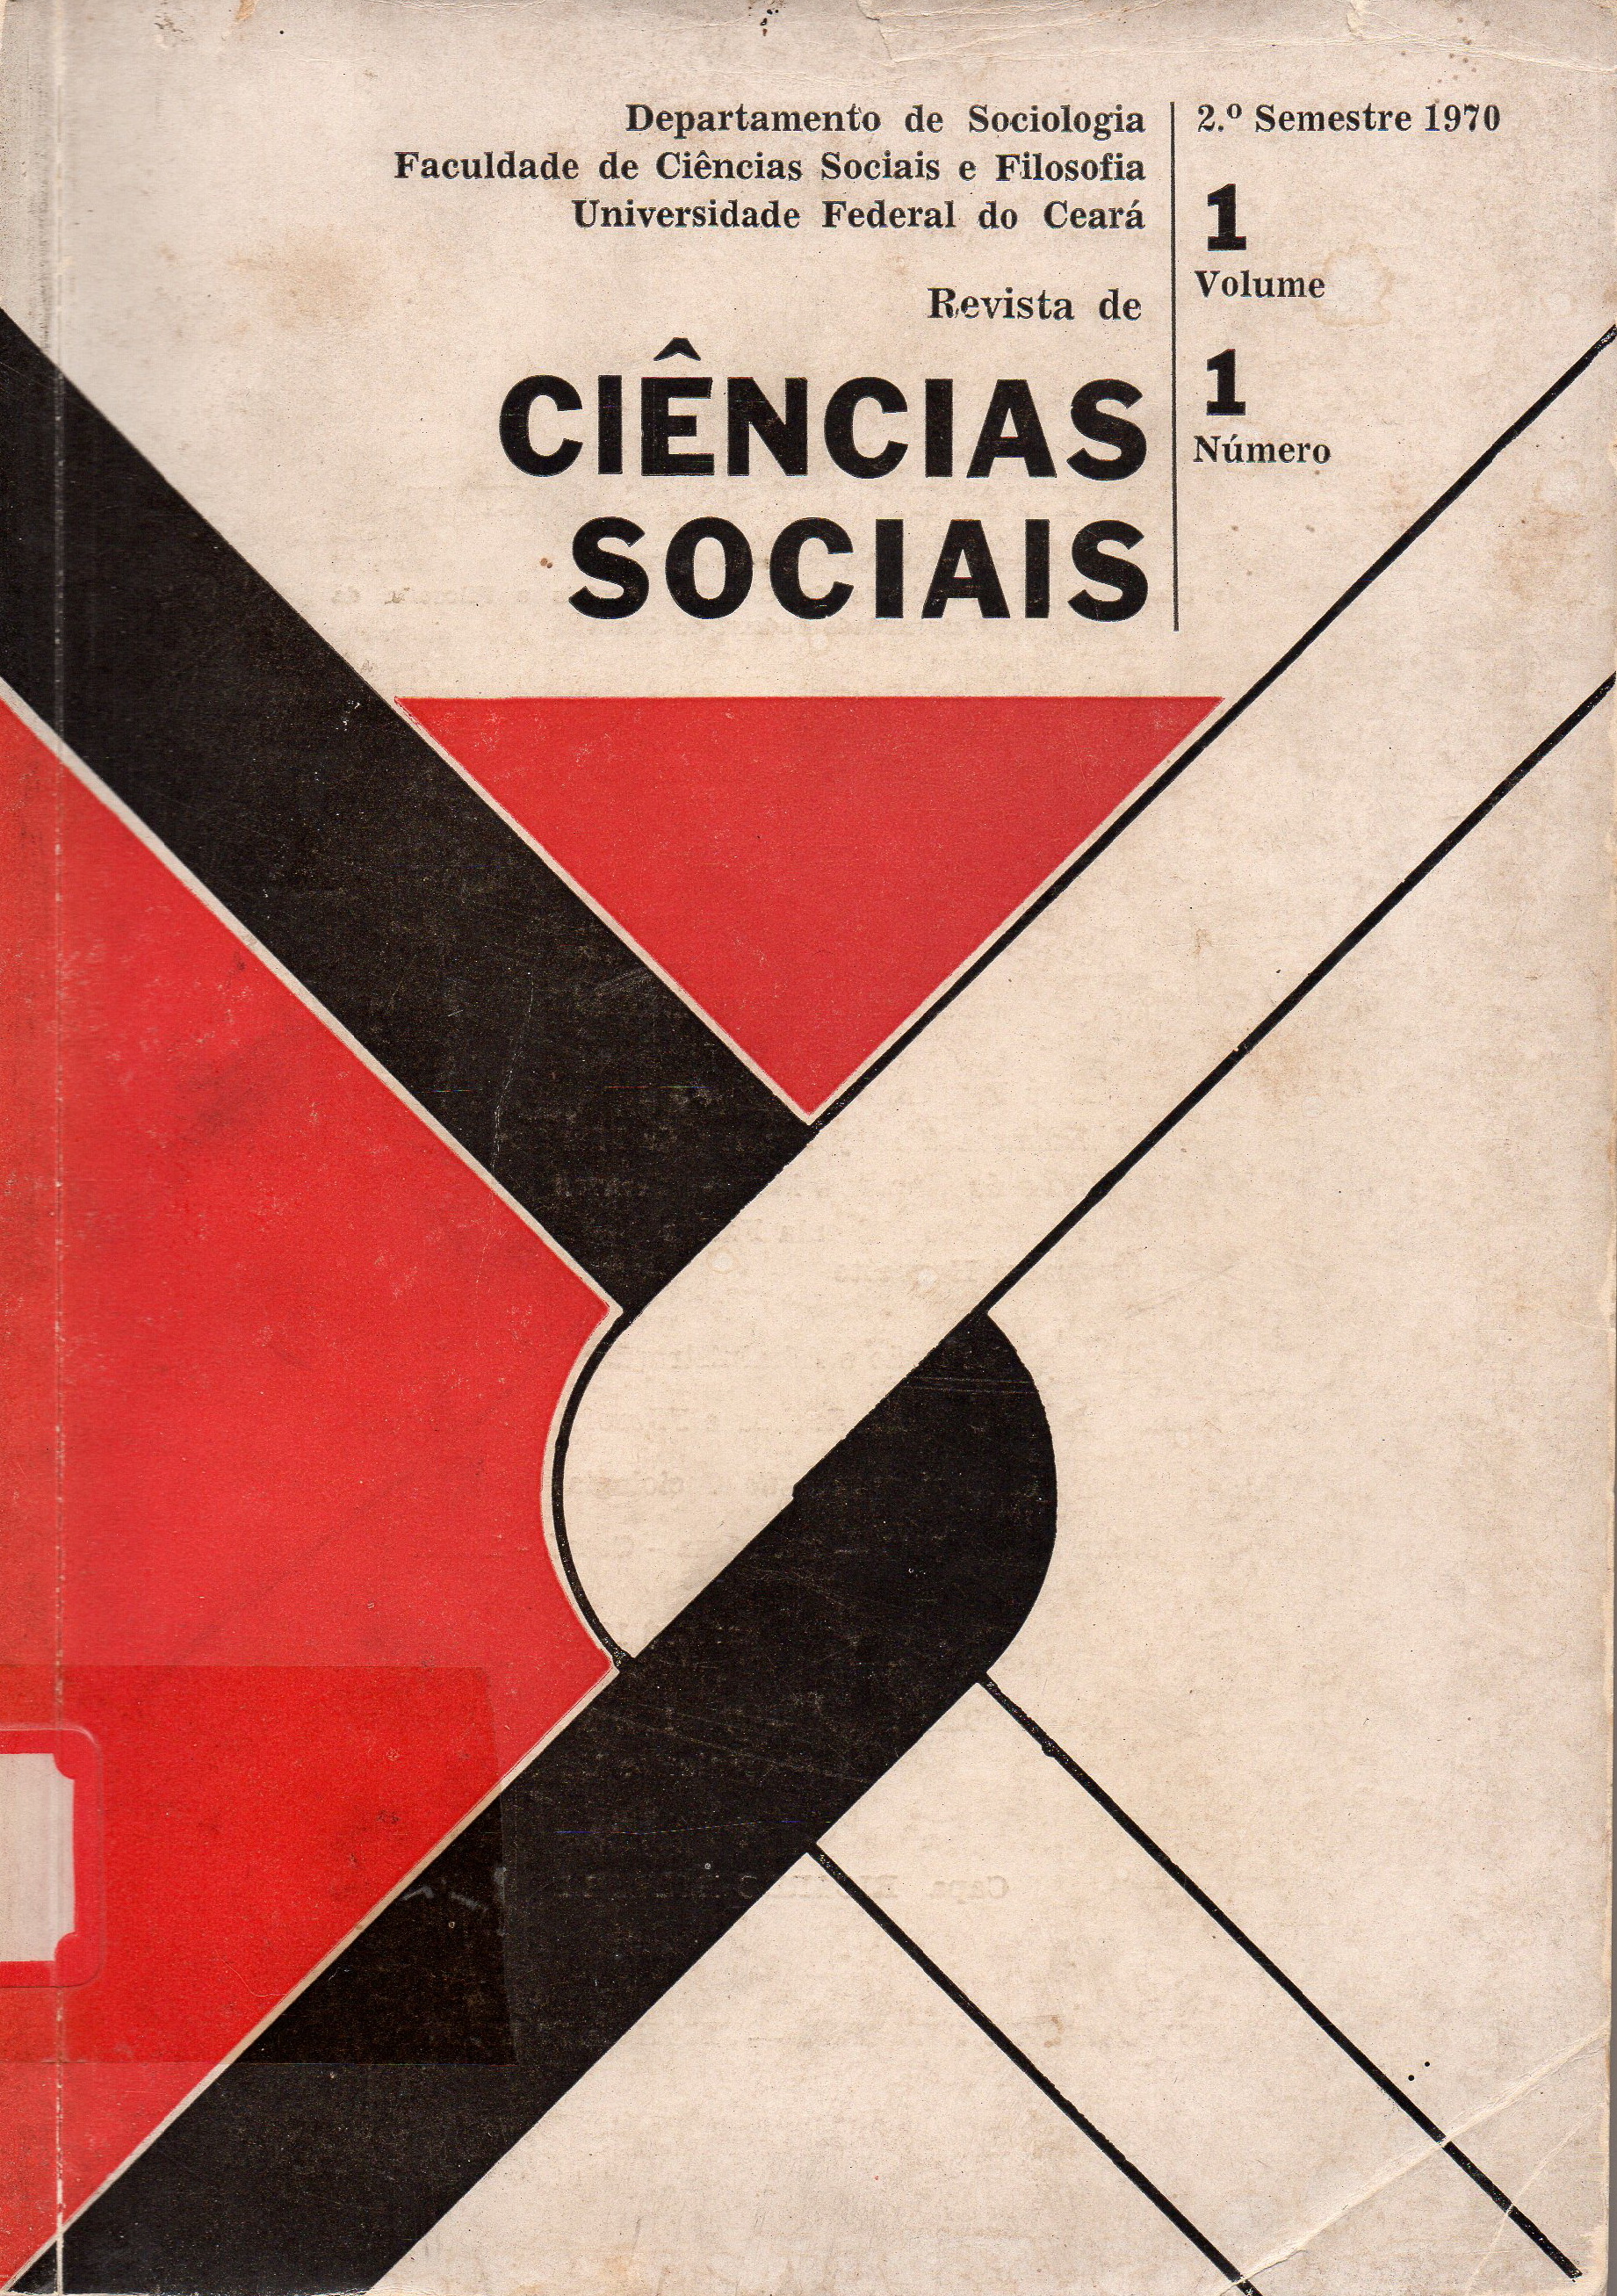 					Ver Vol. 1 Núm. 1 (1970): Vol. 1 da Revista de Ciências Sociais
				